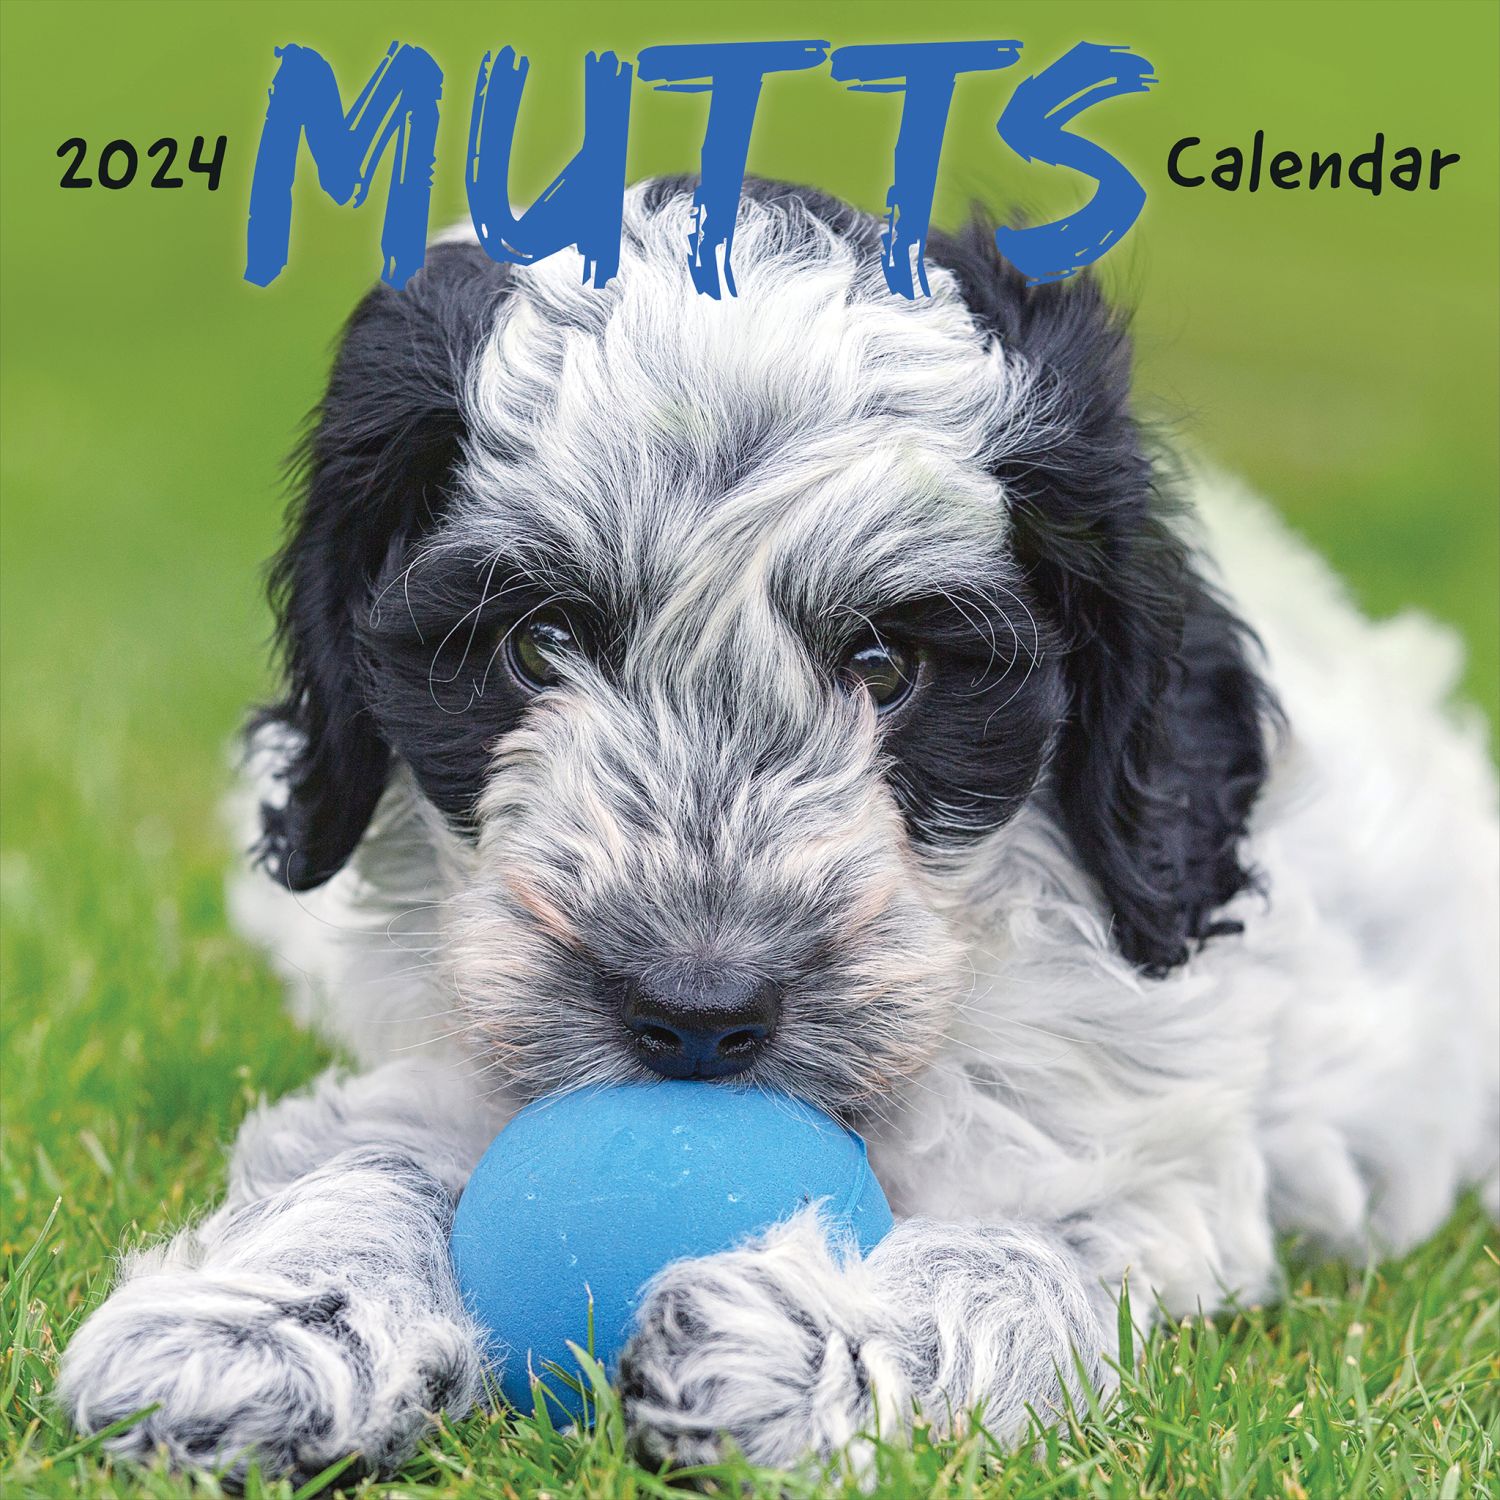 Mutts 2024 Wall Calendar